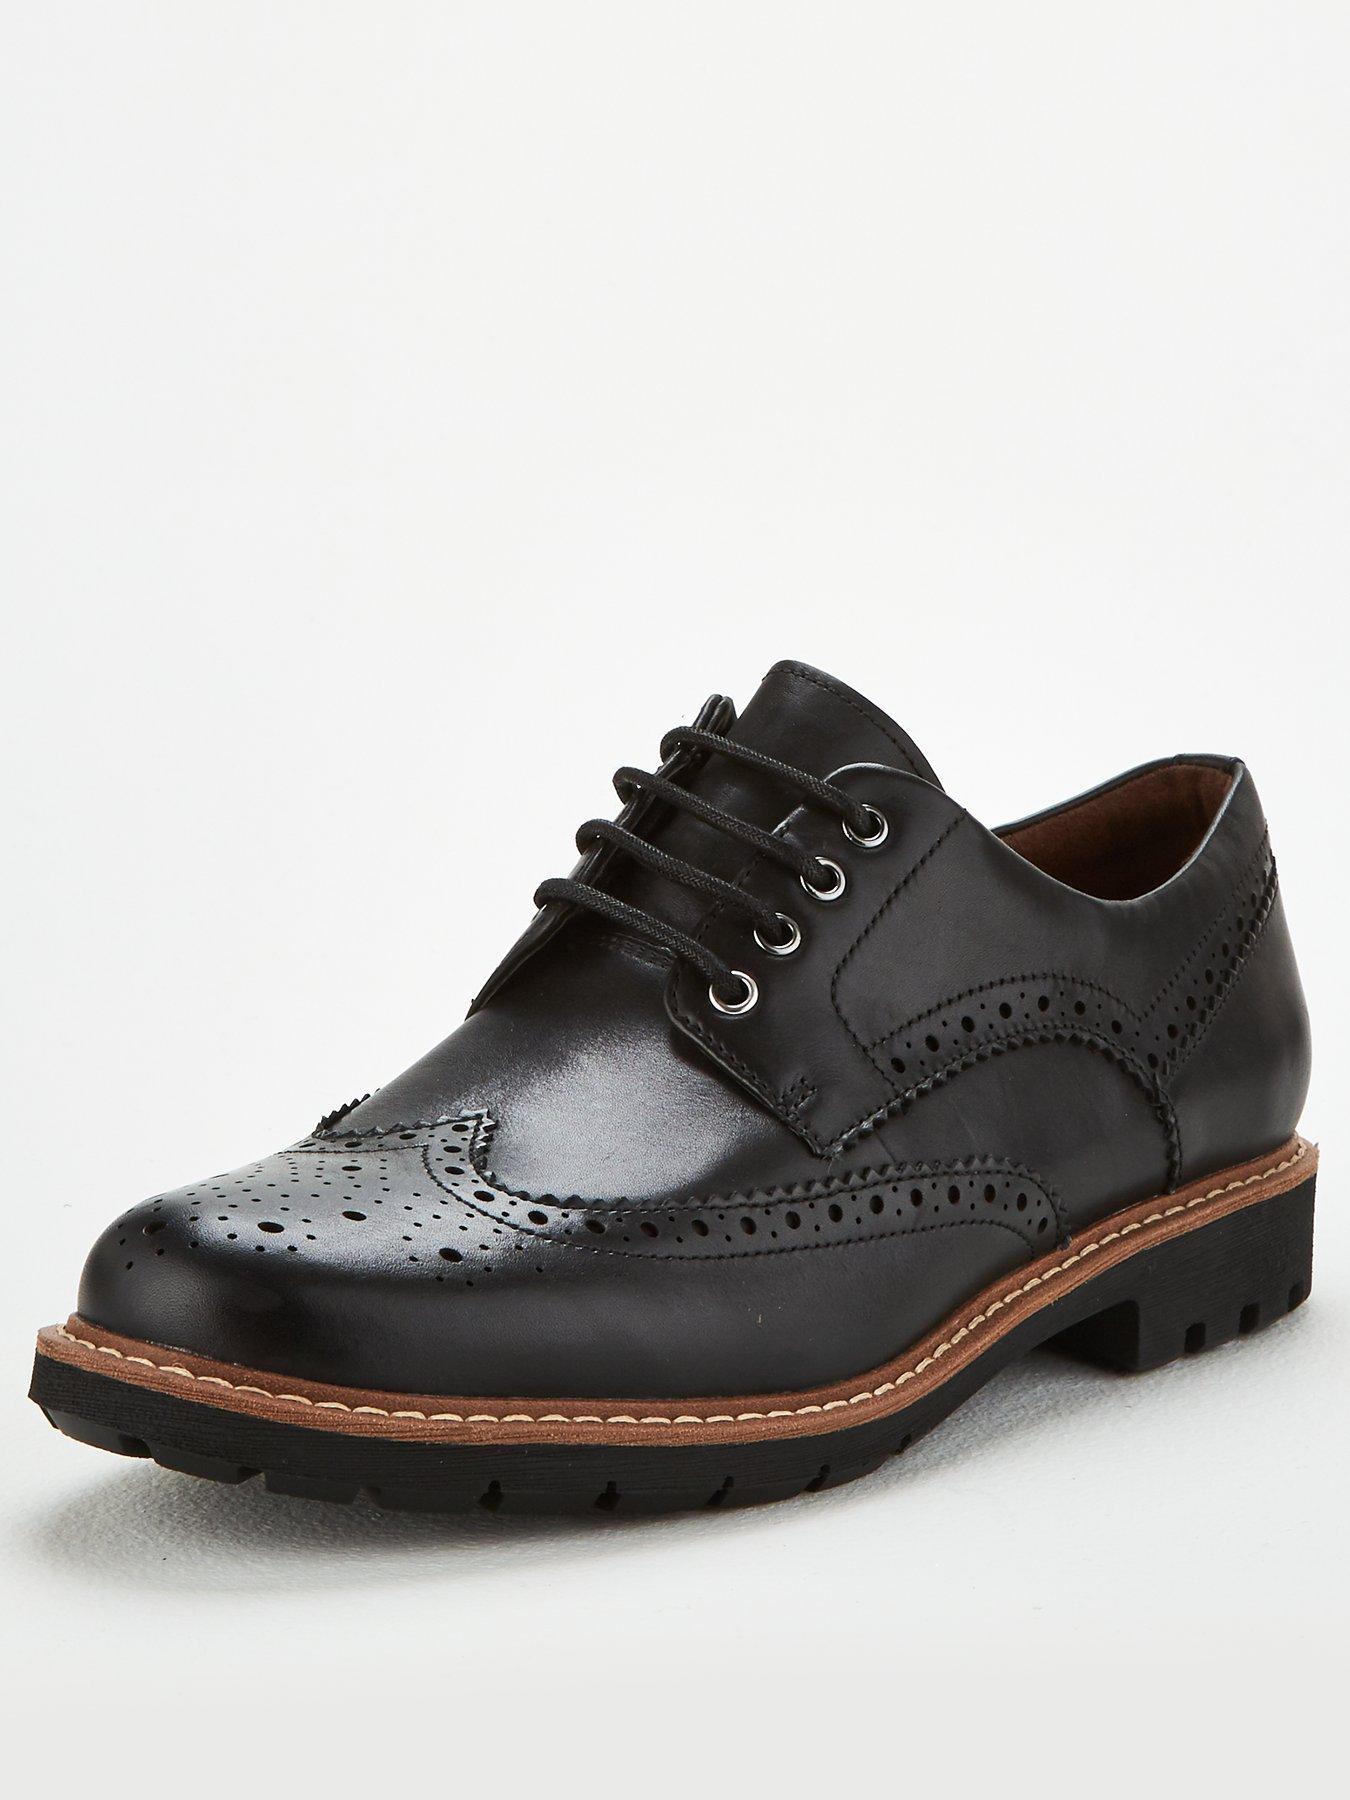 Clarks Batcombe Wing Shoe - Black | very.co.uk